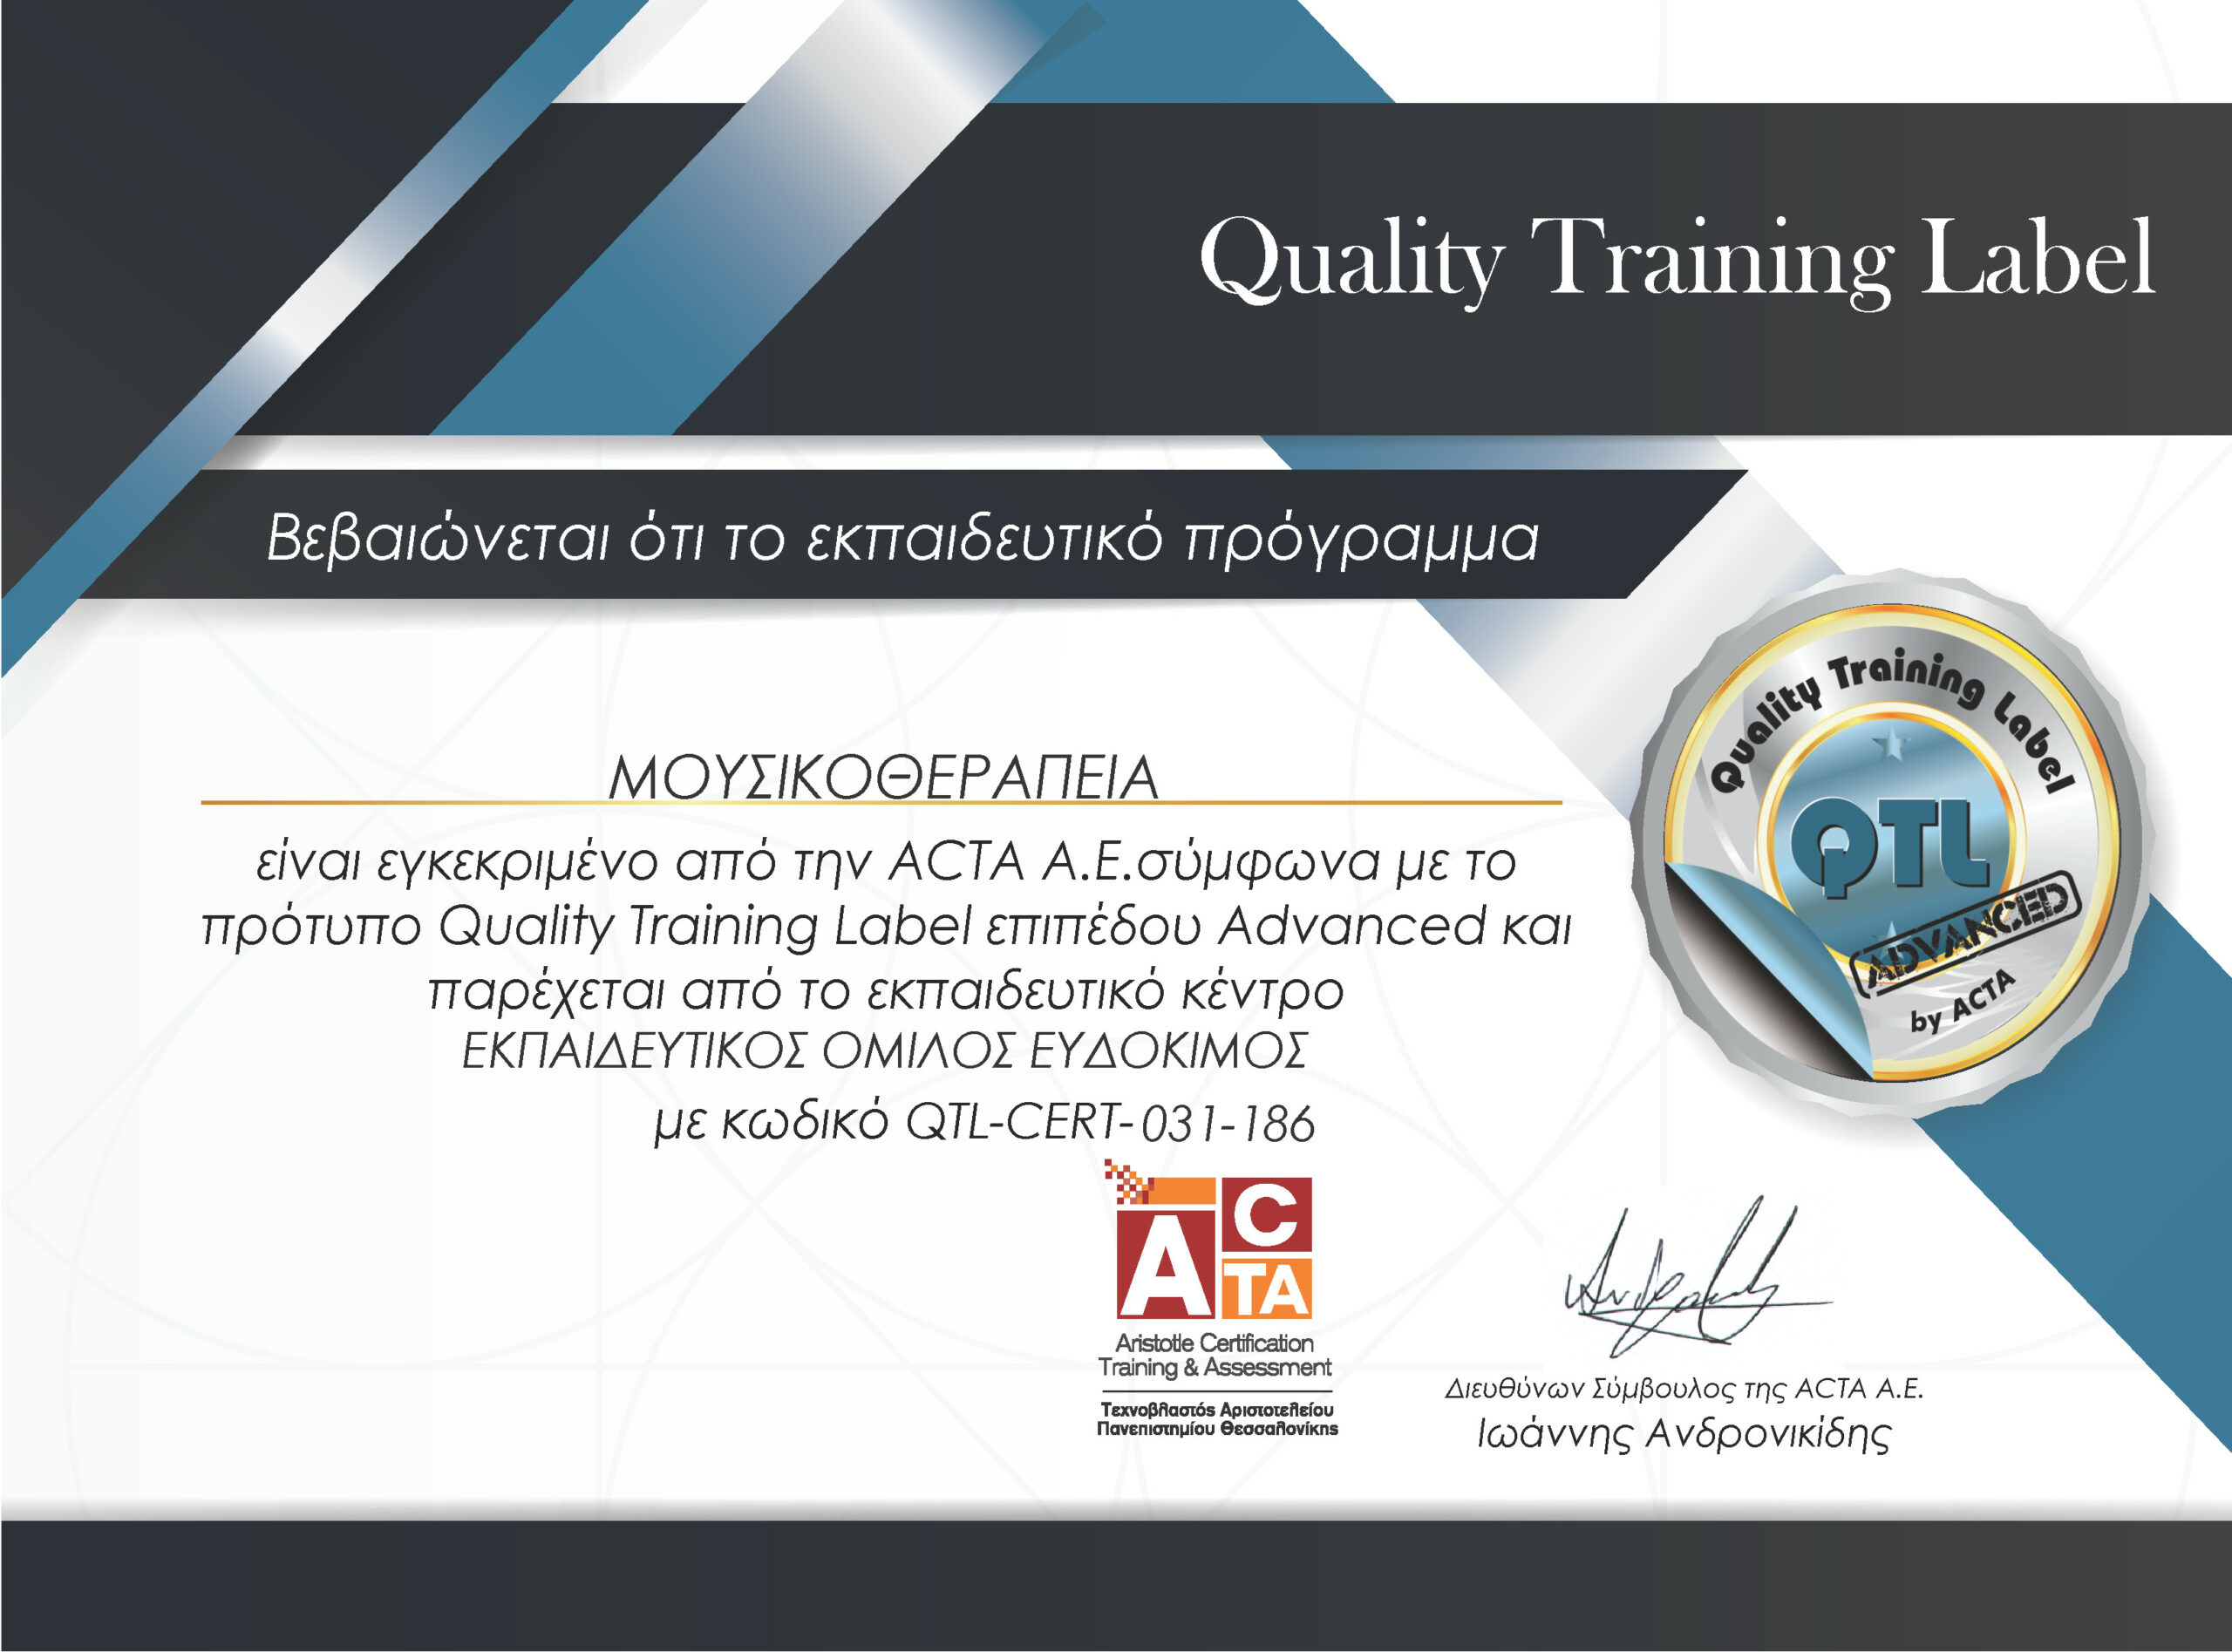 Μουσικοθεραπεία - Πιστοποιημένο εκπαιδευτικό πρόγραμμα της ACTA σύμφωνα με το πρότυπο QTL επιπέδου Advanced